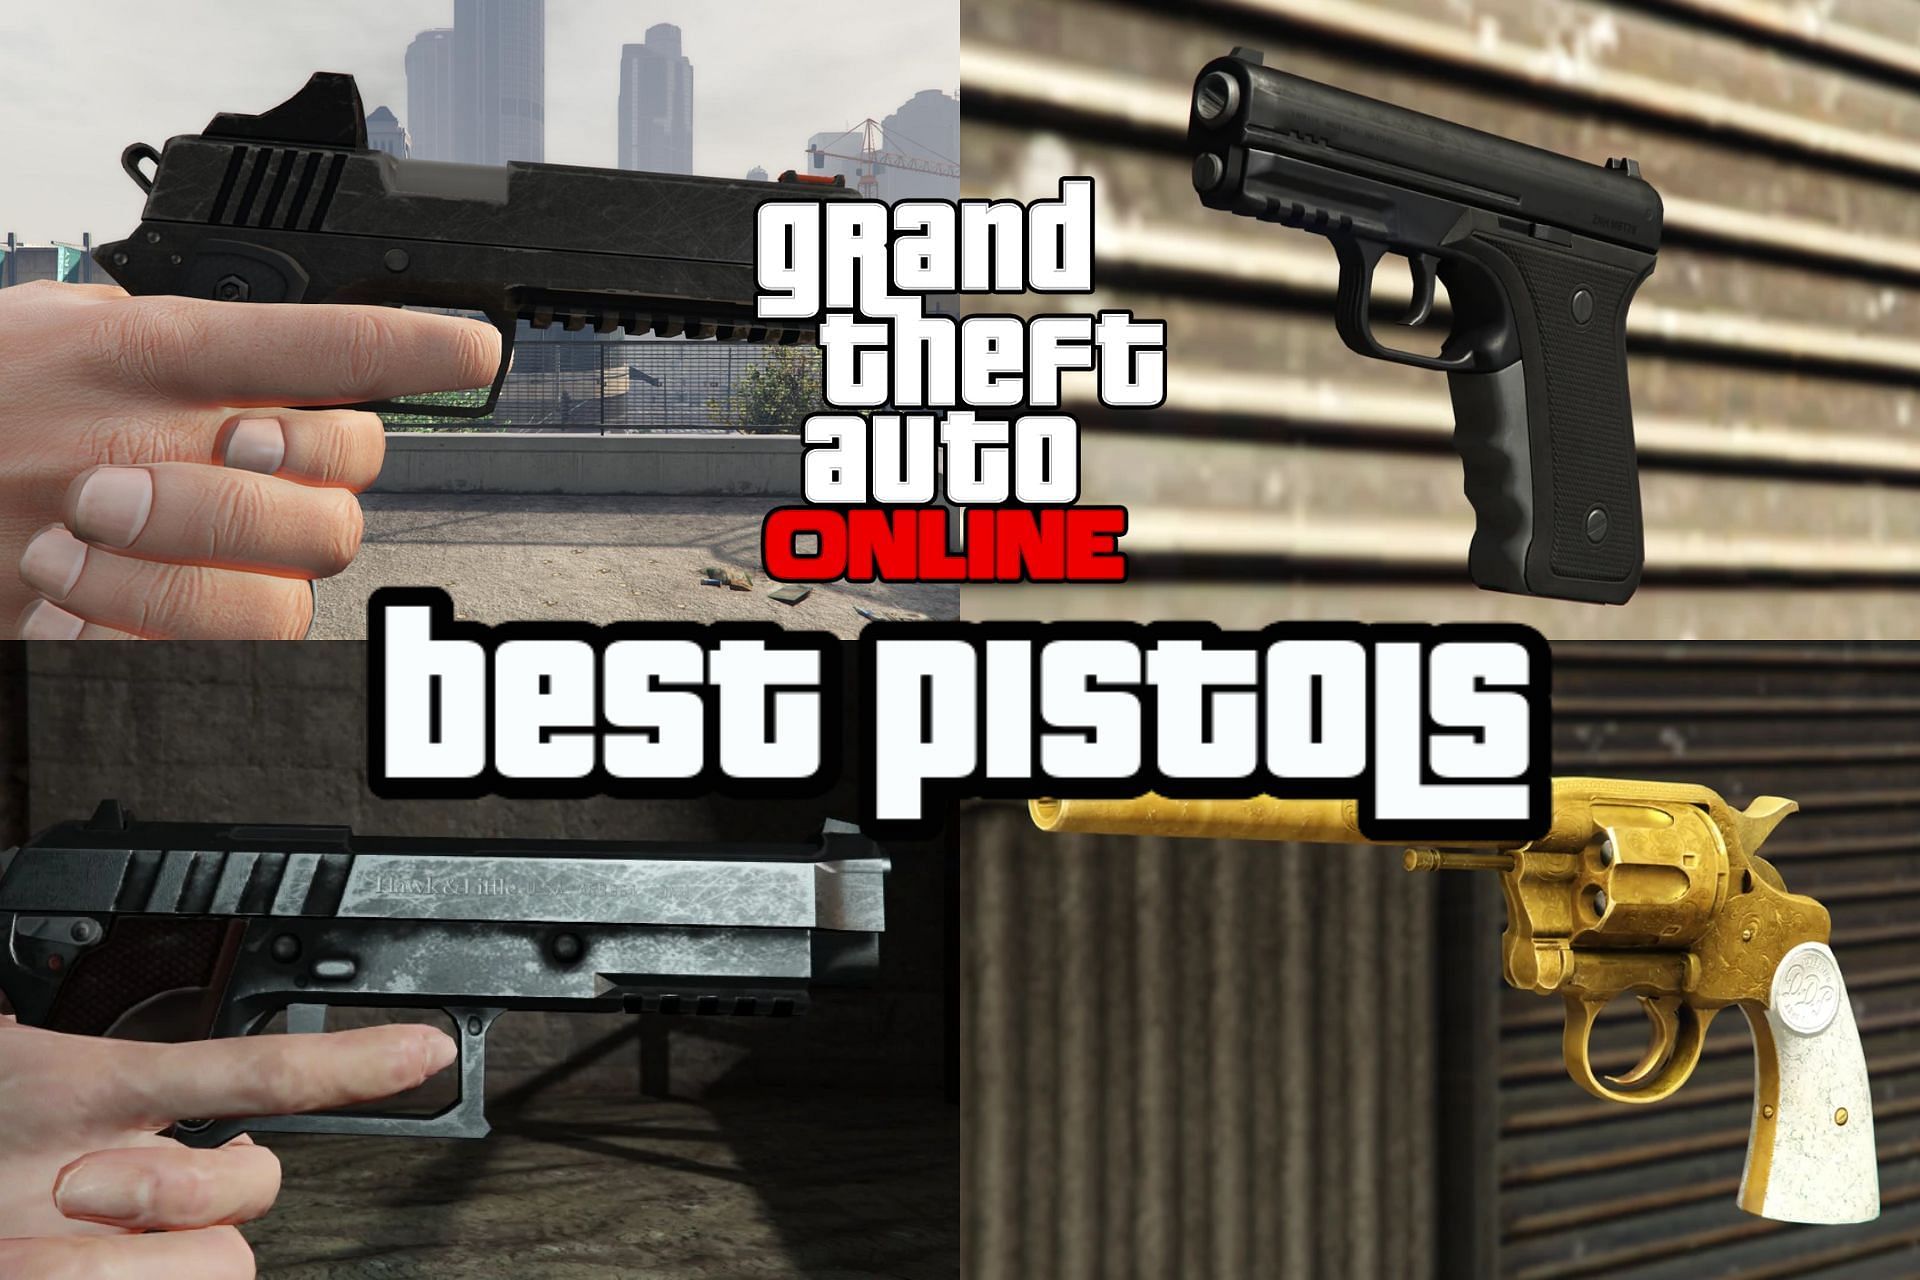 Top 5 pistols in GTA Online after the Los Santos Drug Wars